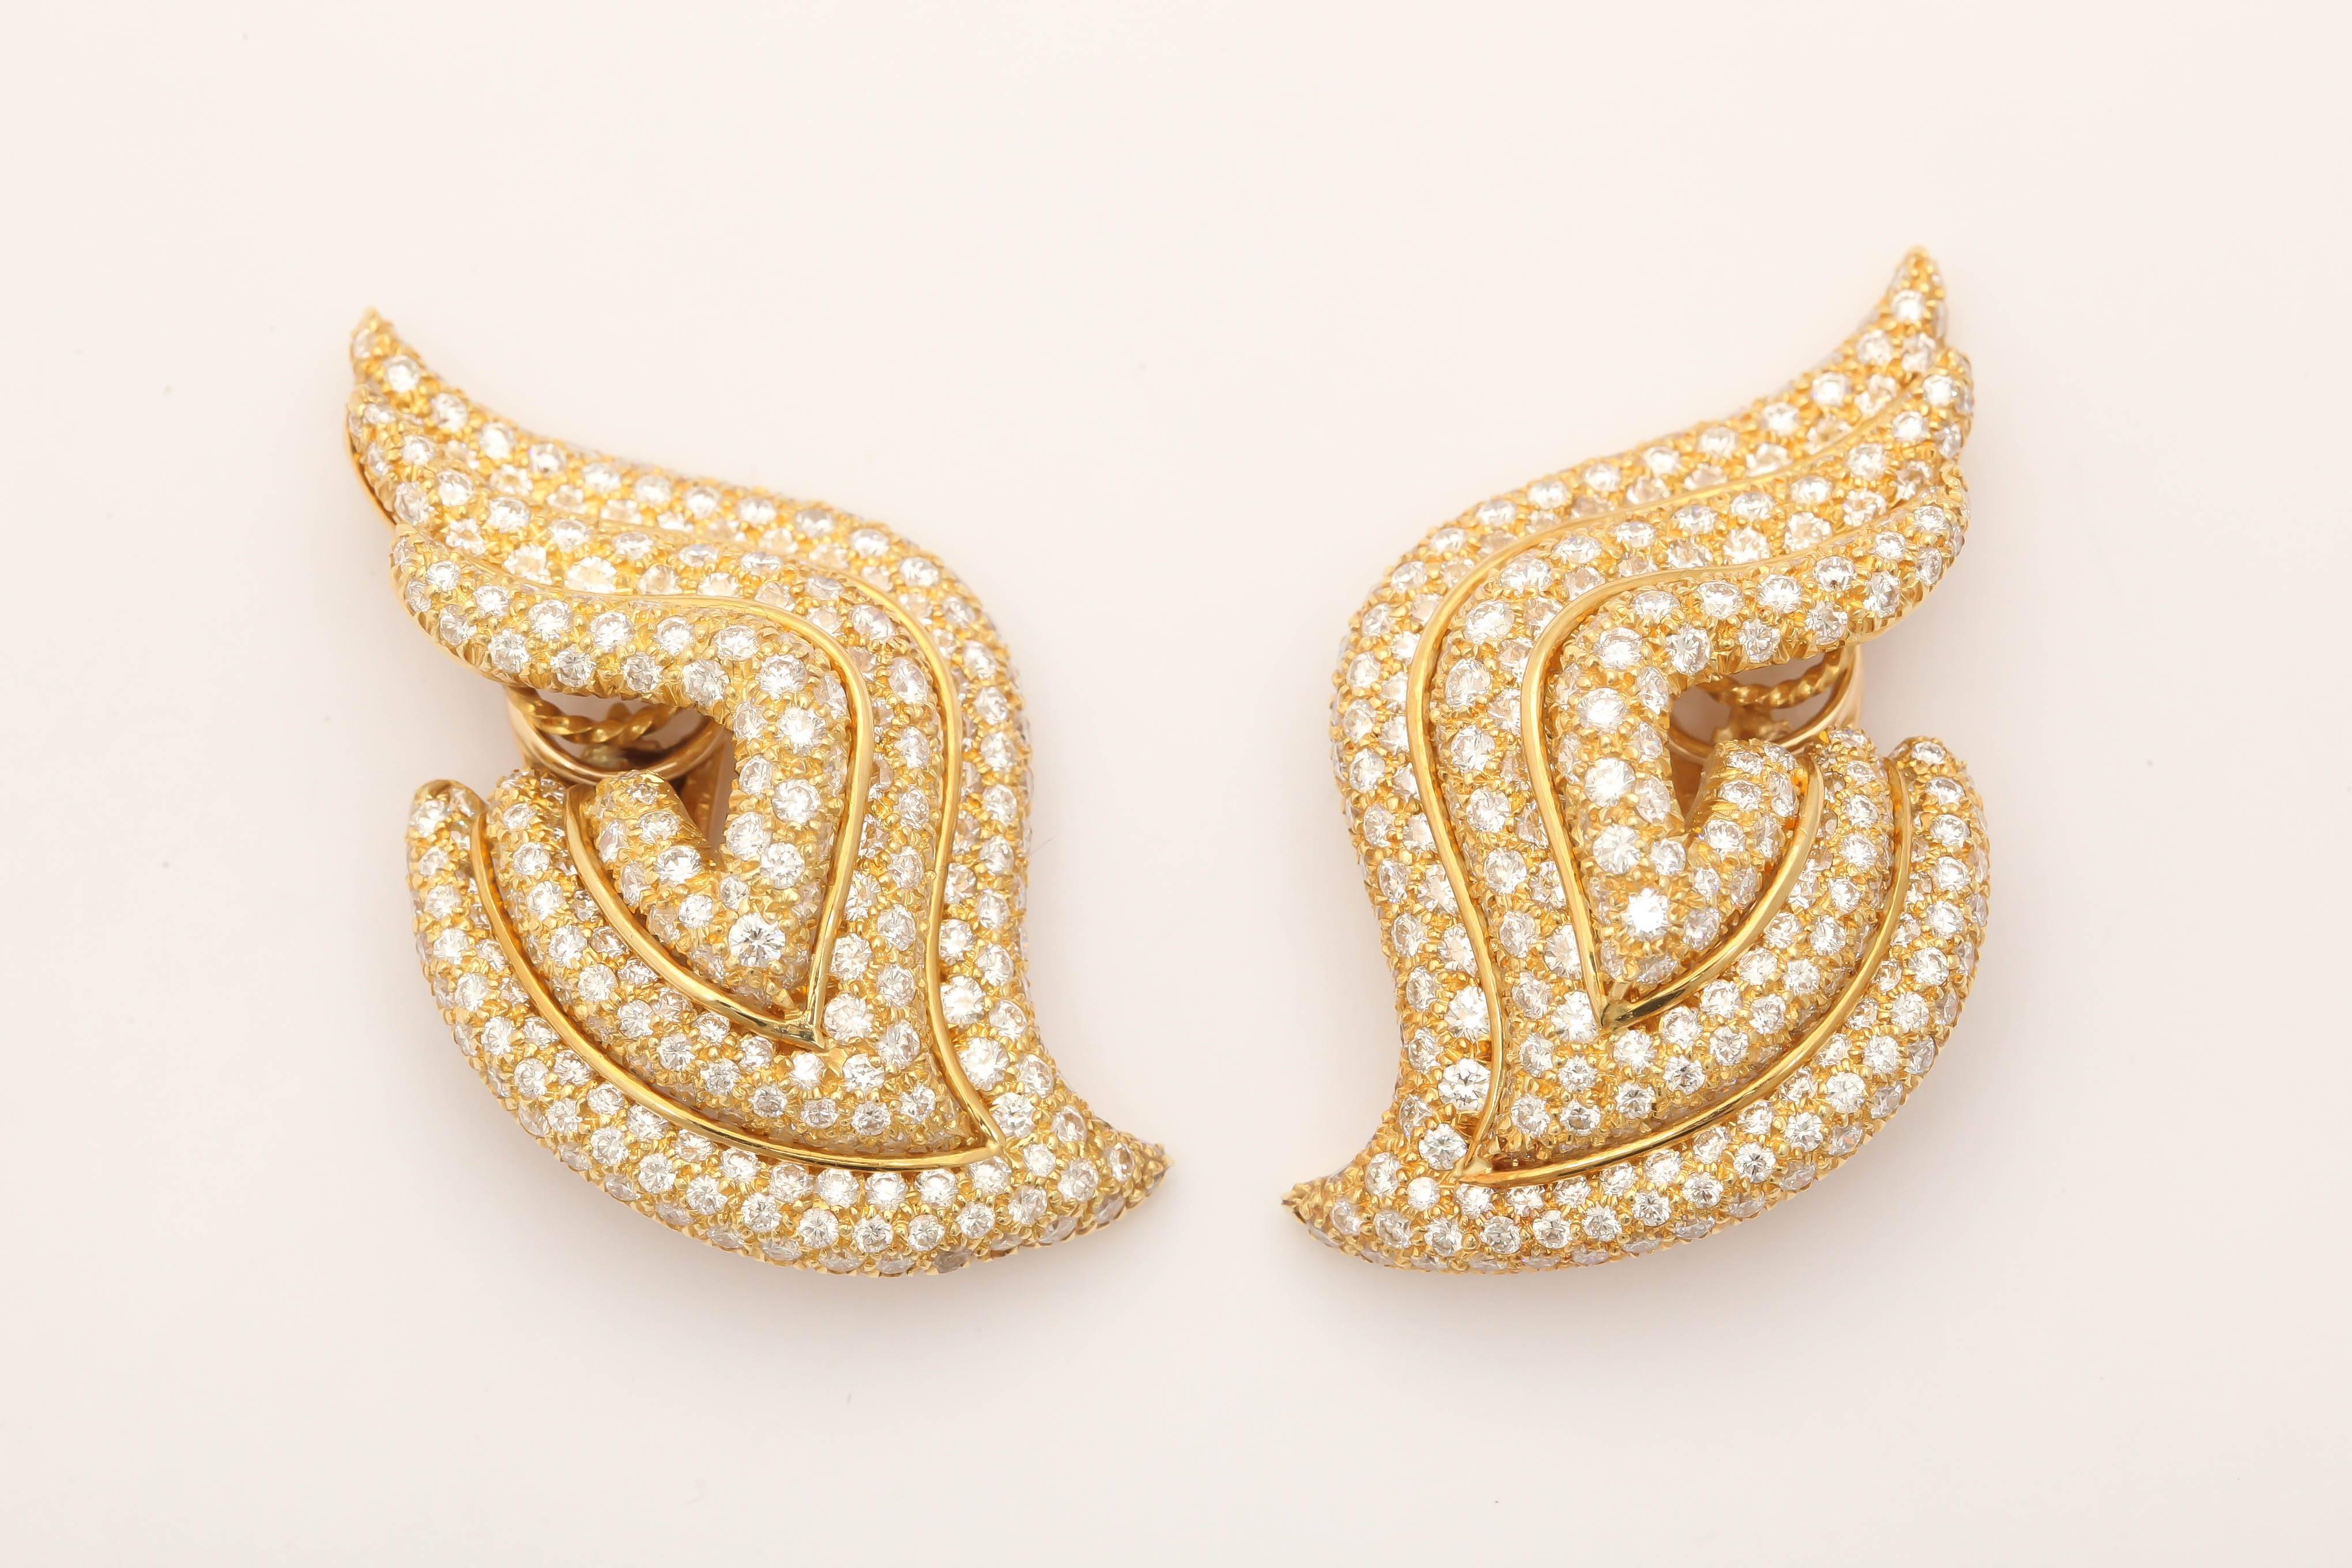 Women's henry Dunay diamond gold Earrings